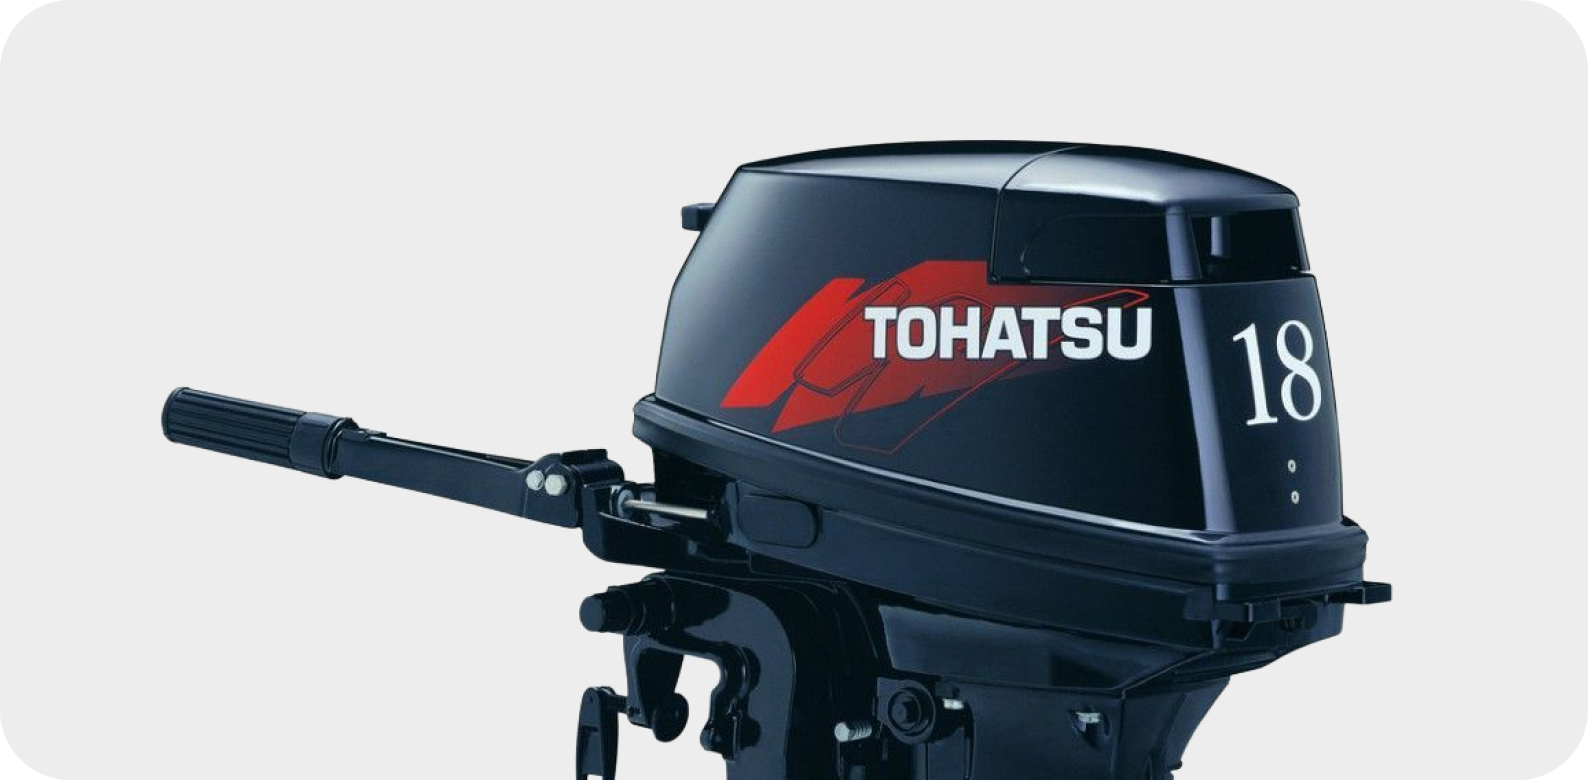 Лодочные моторы тохатсу двухтактные купить. Лодочный мотор Tohatsu 18. Лодочный мотор Tohatsu m 18e2 s. Лодочный мотор Тохатсу 18 2х тактный. Tohatsu m 18 e2 s.